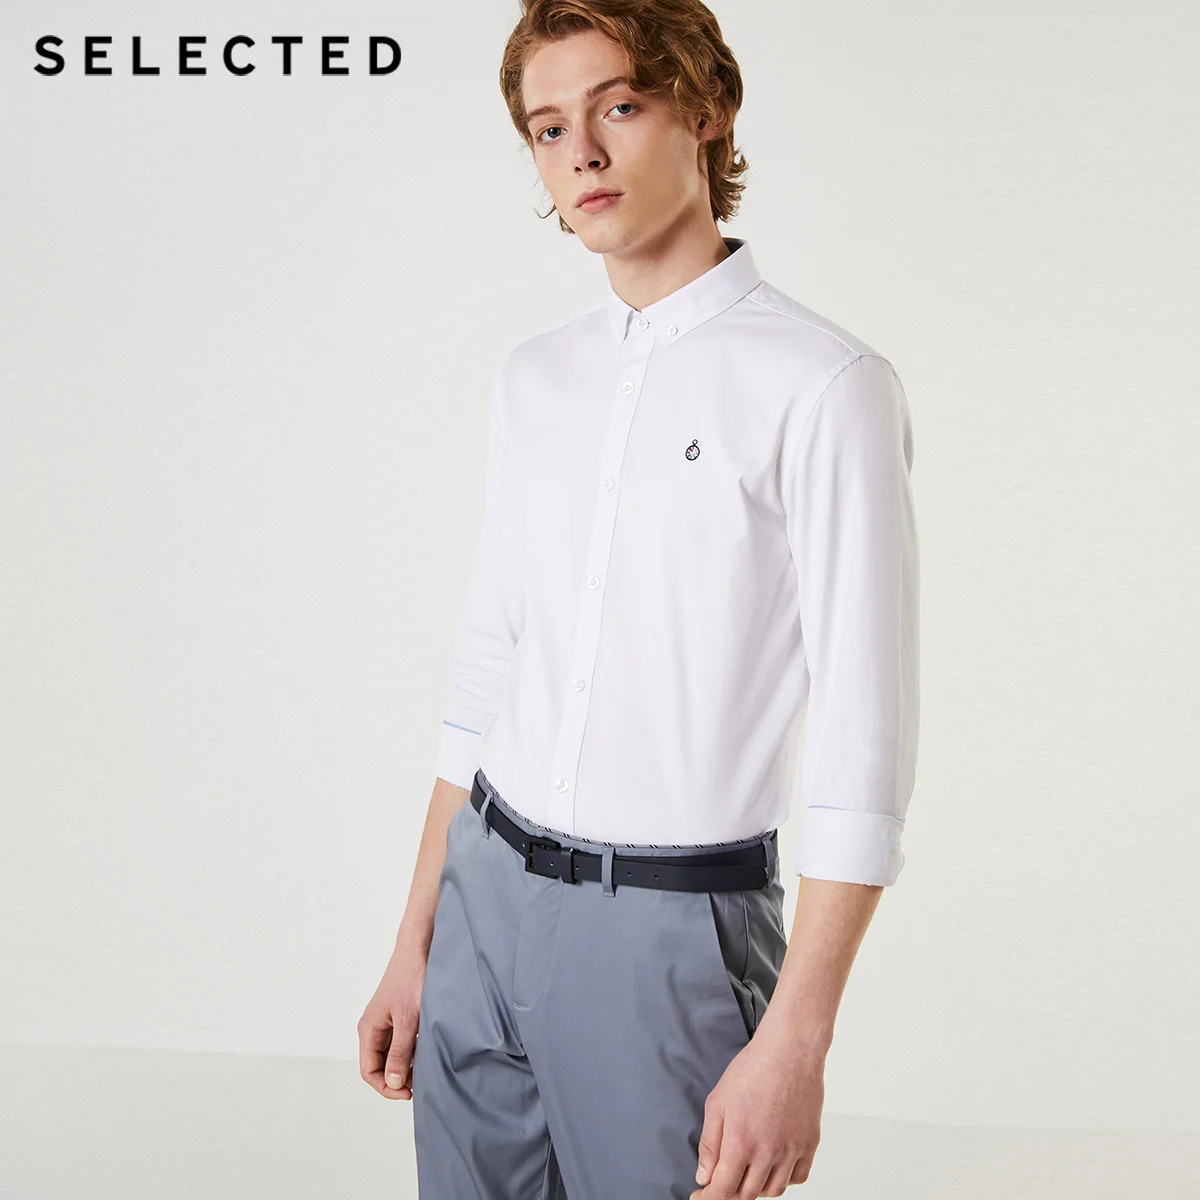 Мужская приталенная рубашка с вышивкой и длинными рукавами | 419305520 - Цвет: OPTIC WHITE